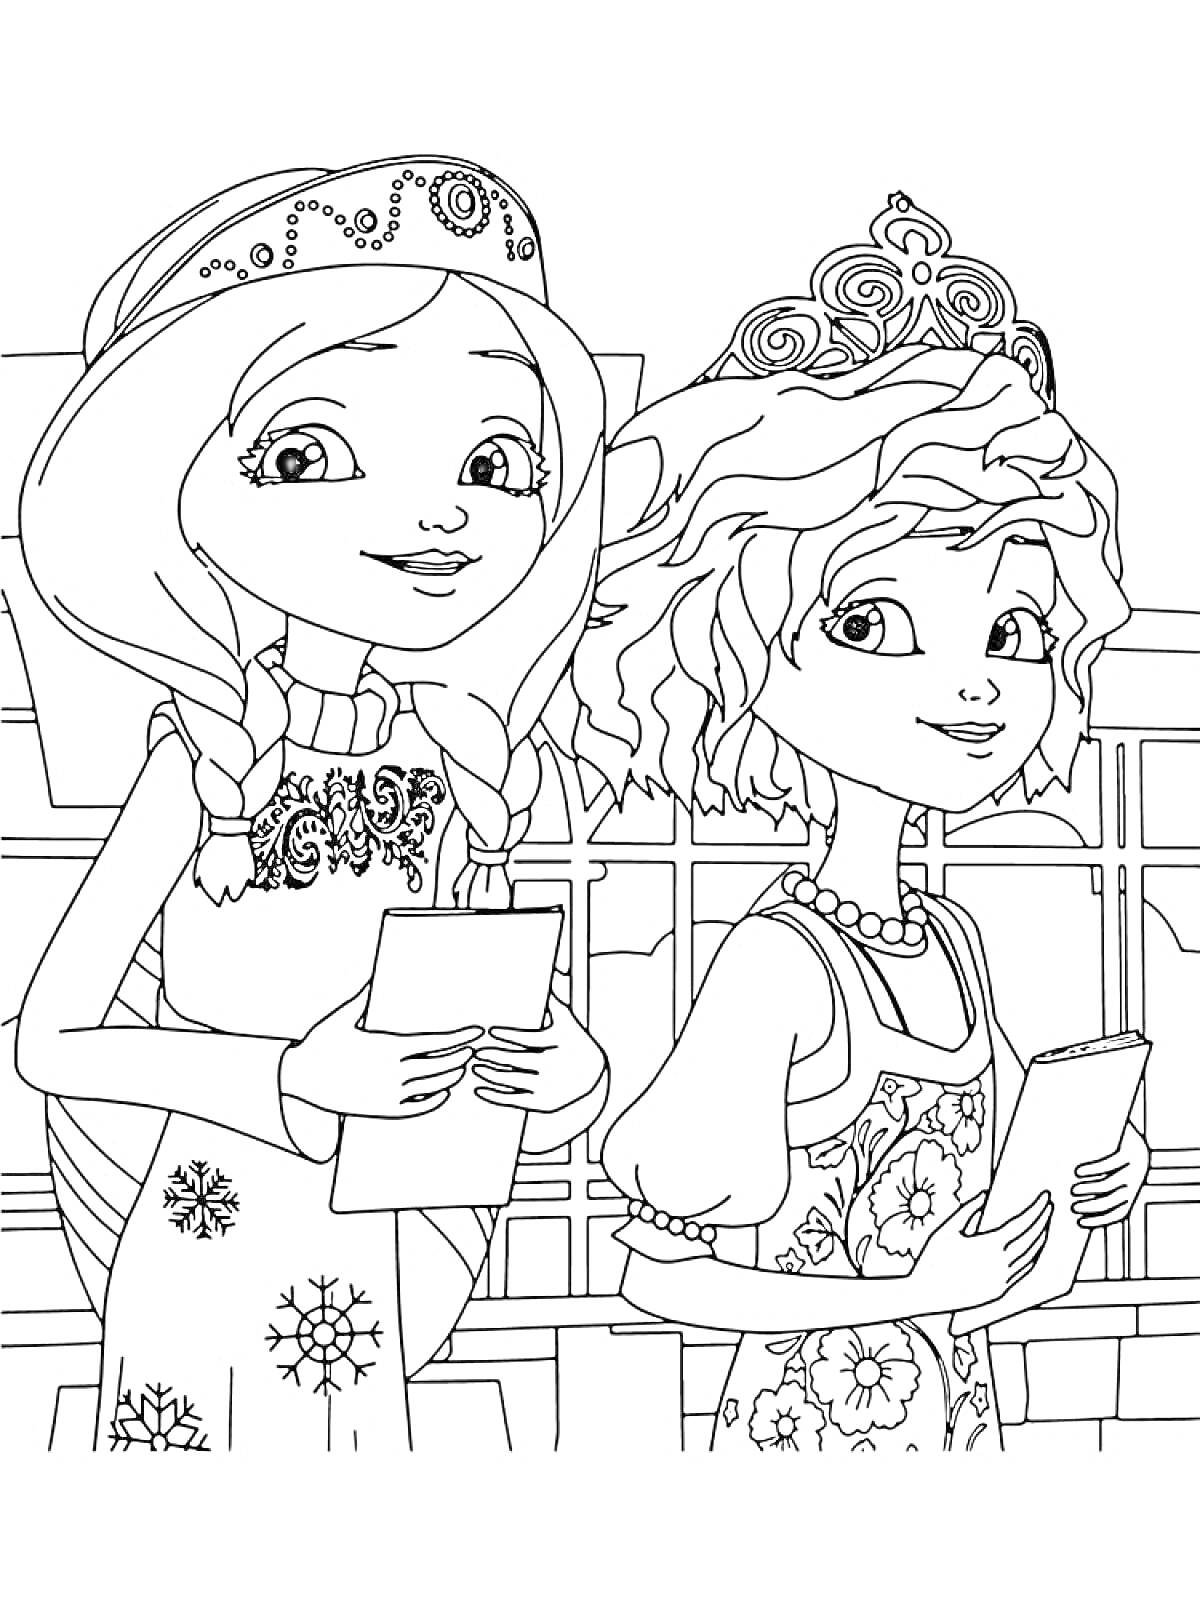 Раскраска Две царевны в коронах с распущенными волосами и косичками, держат книги на фоне окна